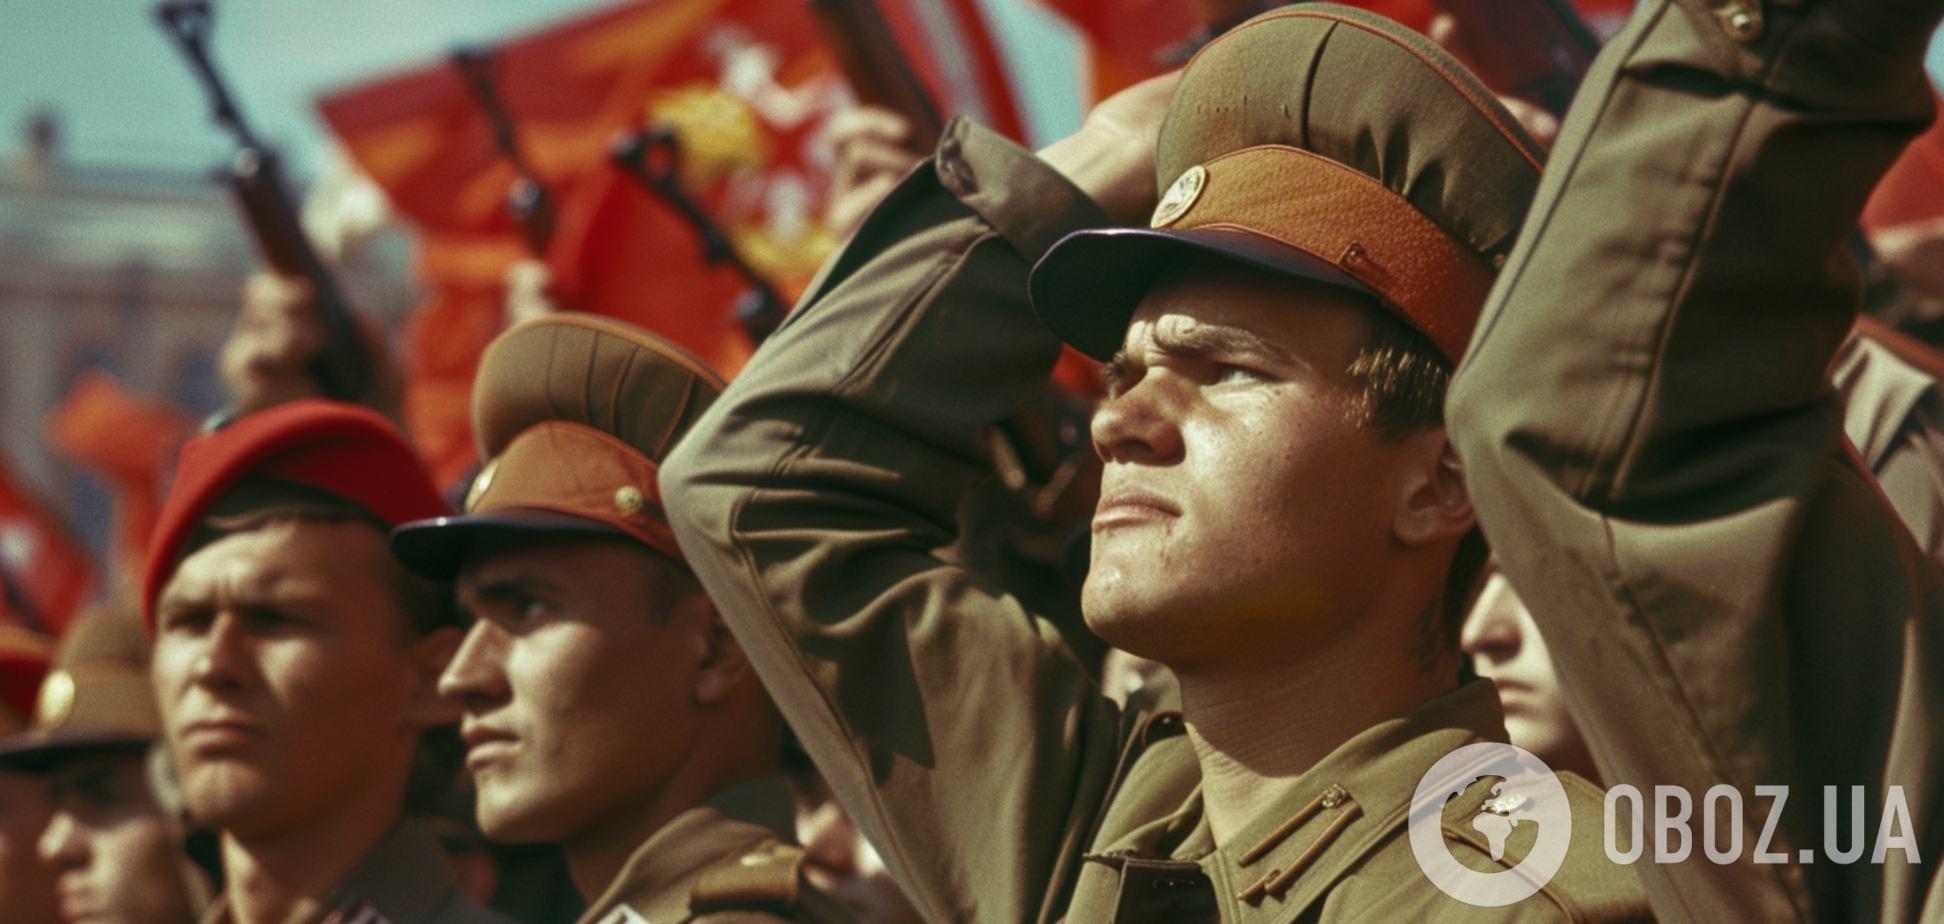 Депортації, заборони і погроми: якою насправді була 'дружба народів' в СРСР